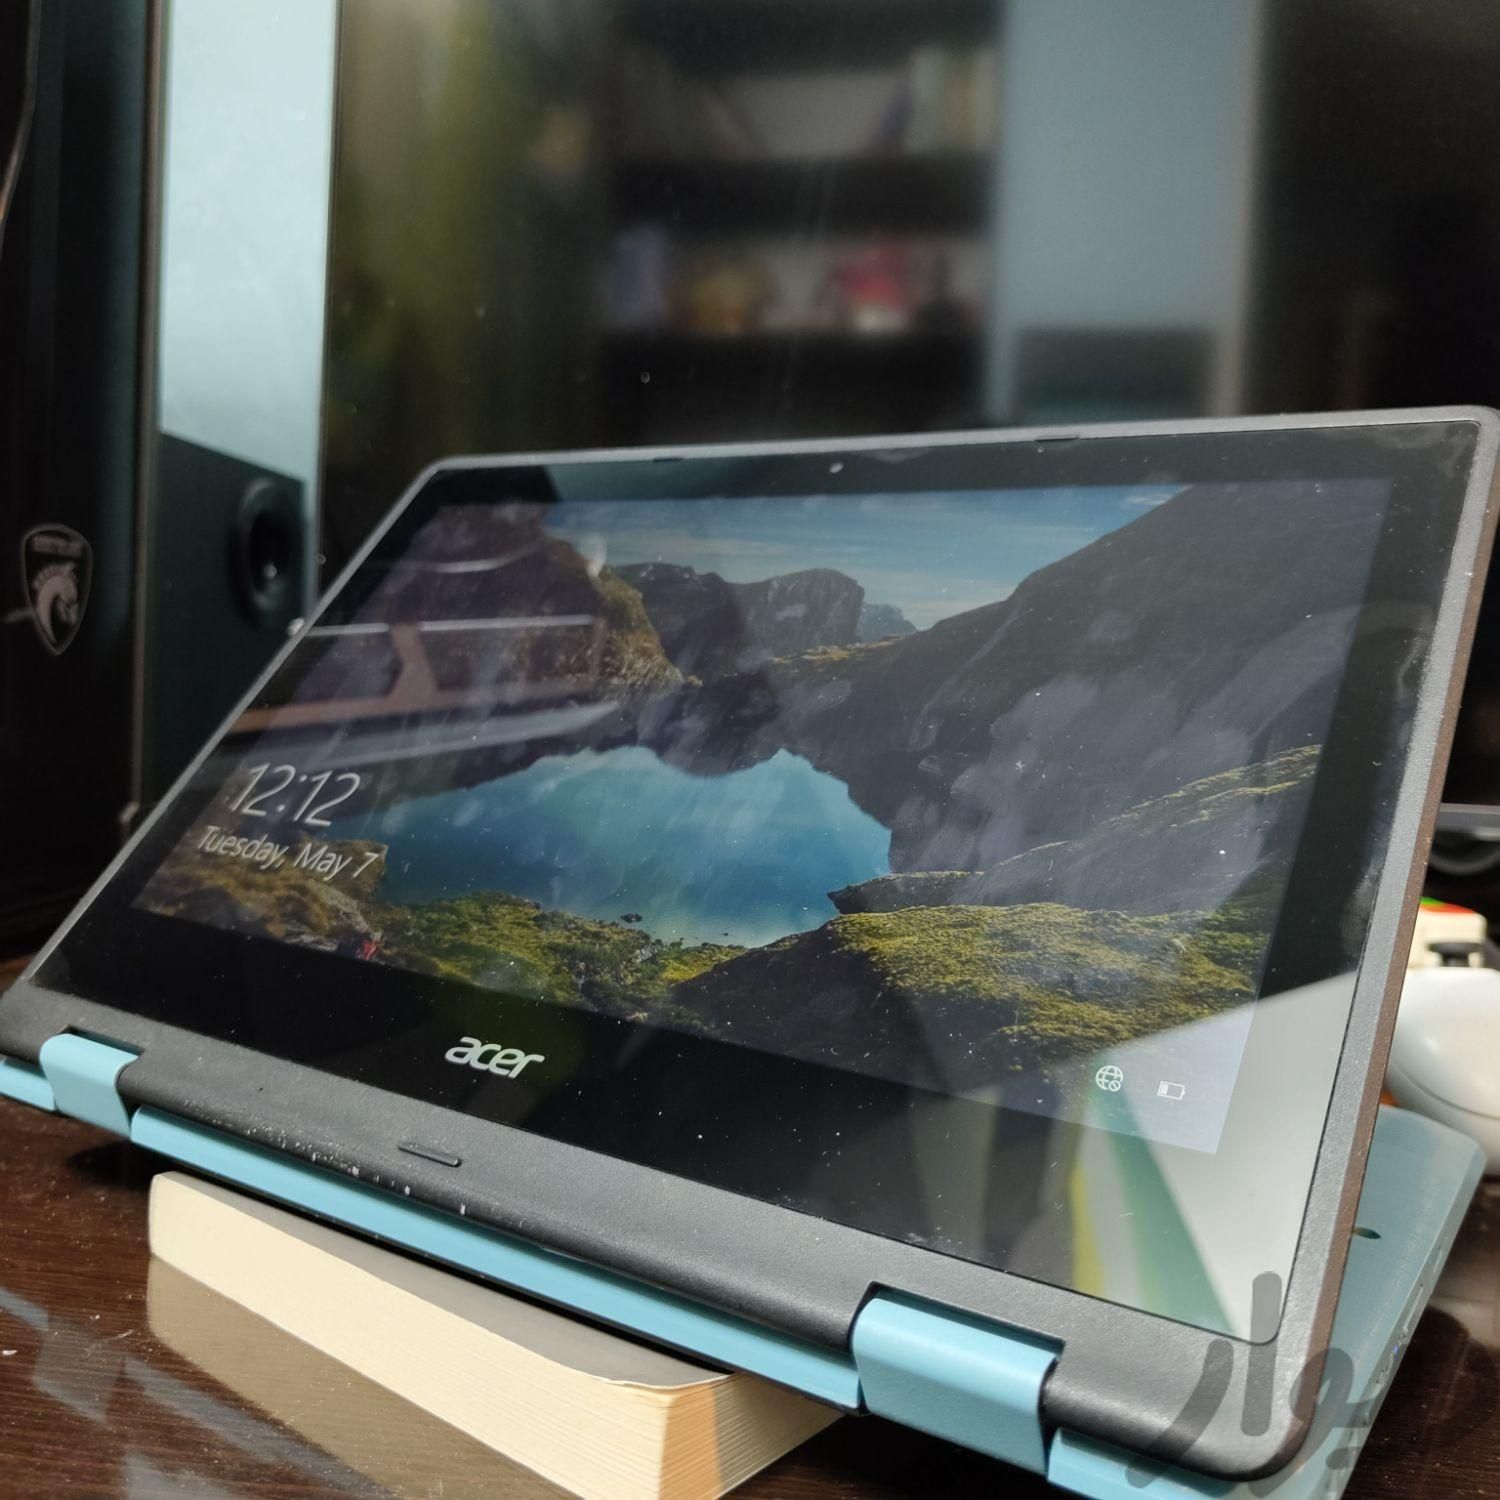 لپ تاپ Acer مدل spin 1 لمسی و تبلت شو|رایانه همراه|شیراز, فرهنگ شهر|دیوار